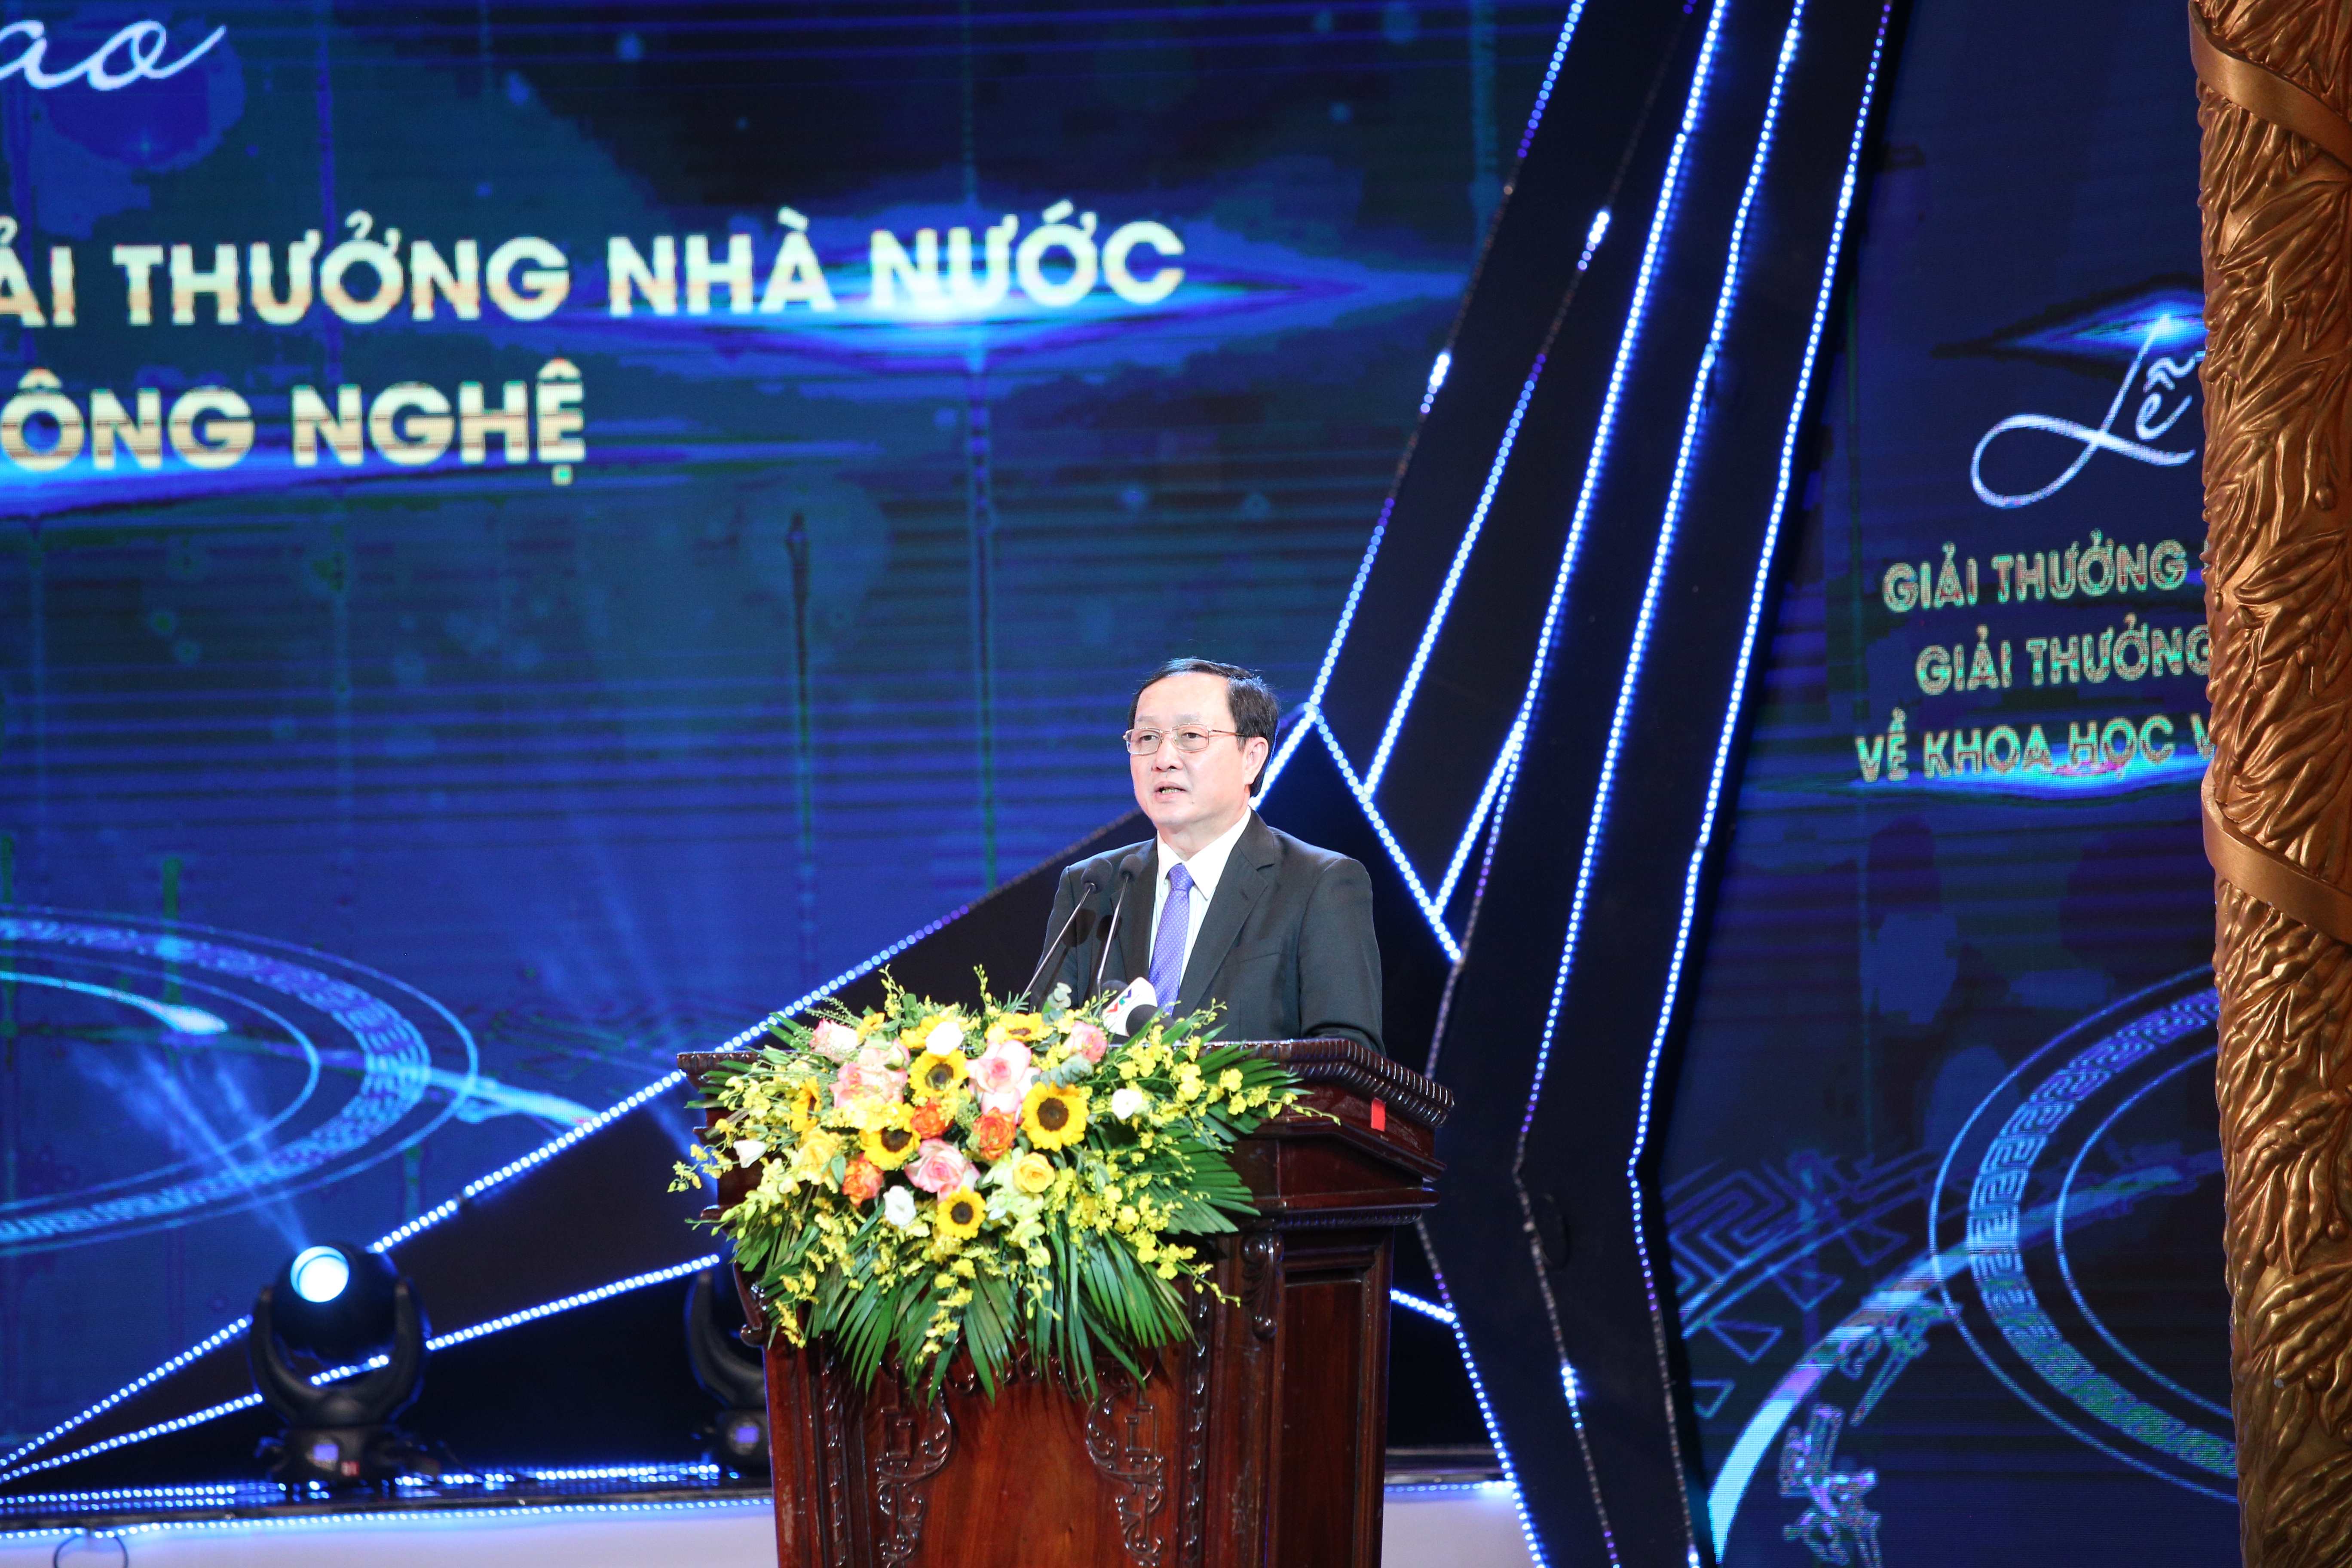 Bộ trưởng Bộ KH&CN Huỳnh Thành Đạt phát biểu trong lễ trao giải. Ảnh: TA